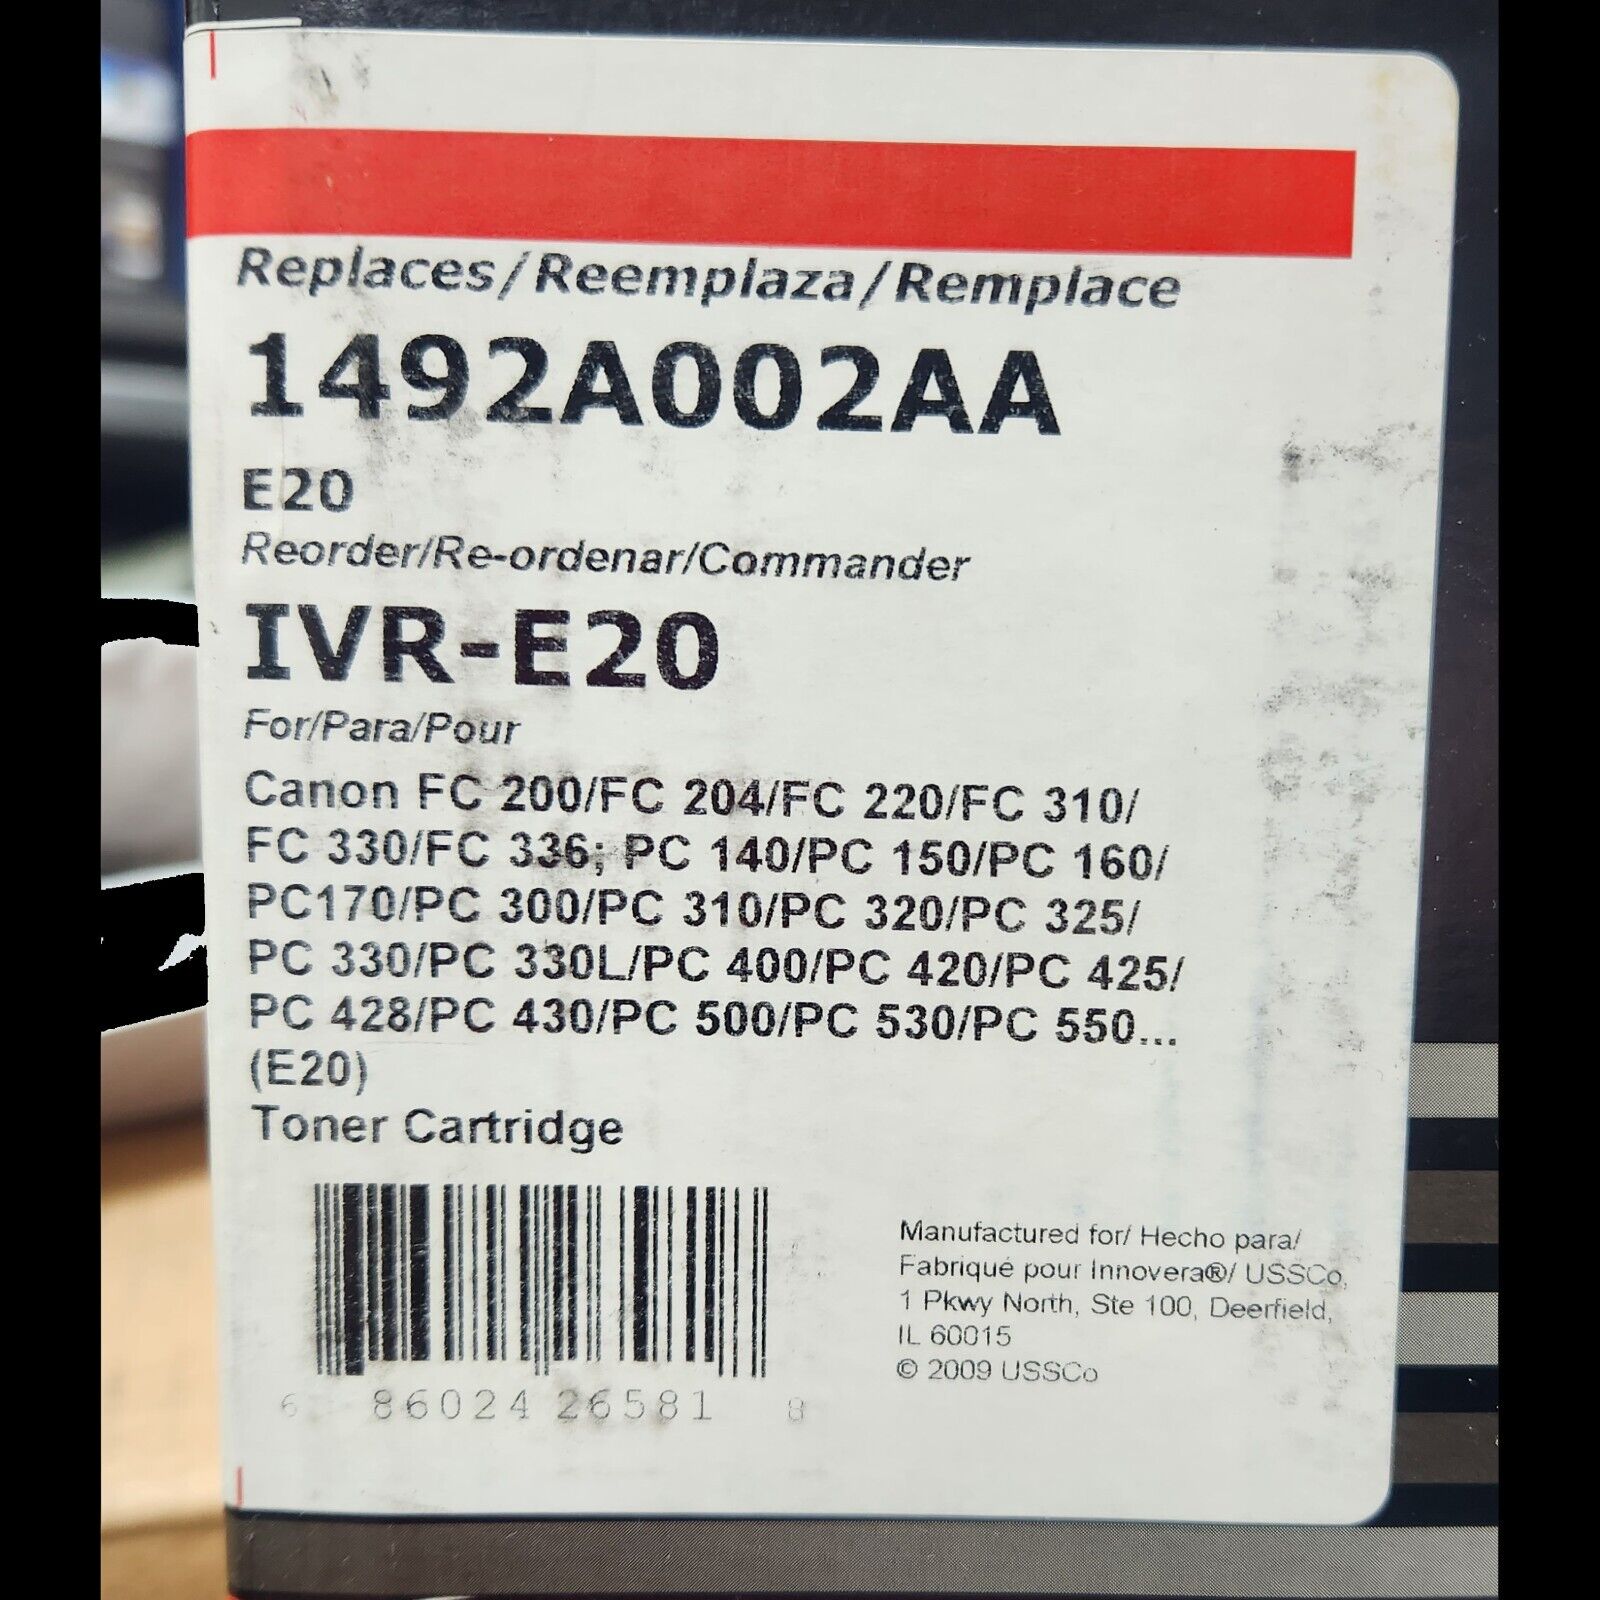 Innovera IVR-E20 Black Toner Cartridge  for Canon E20 1492A002AA